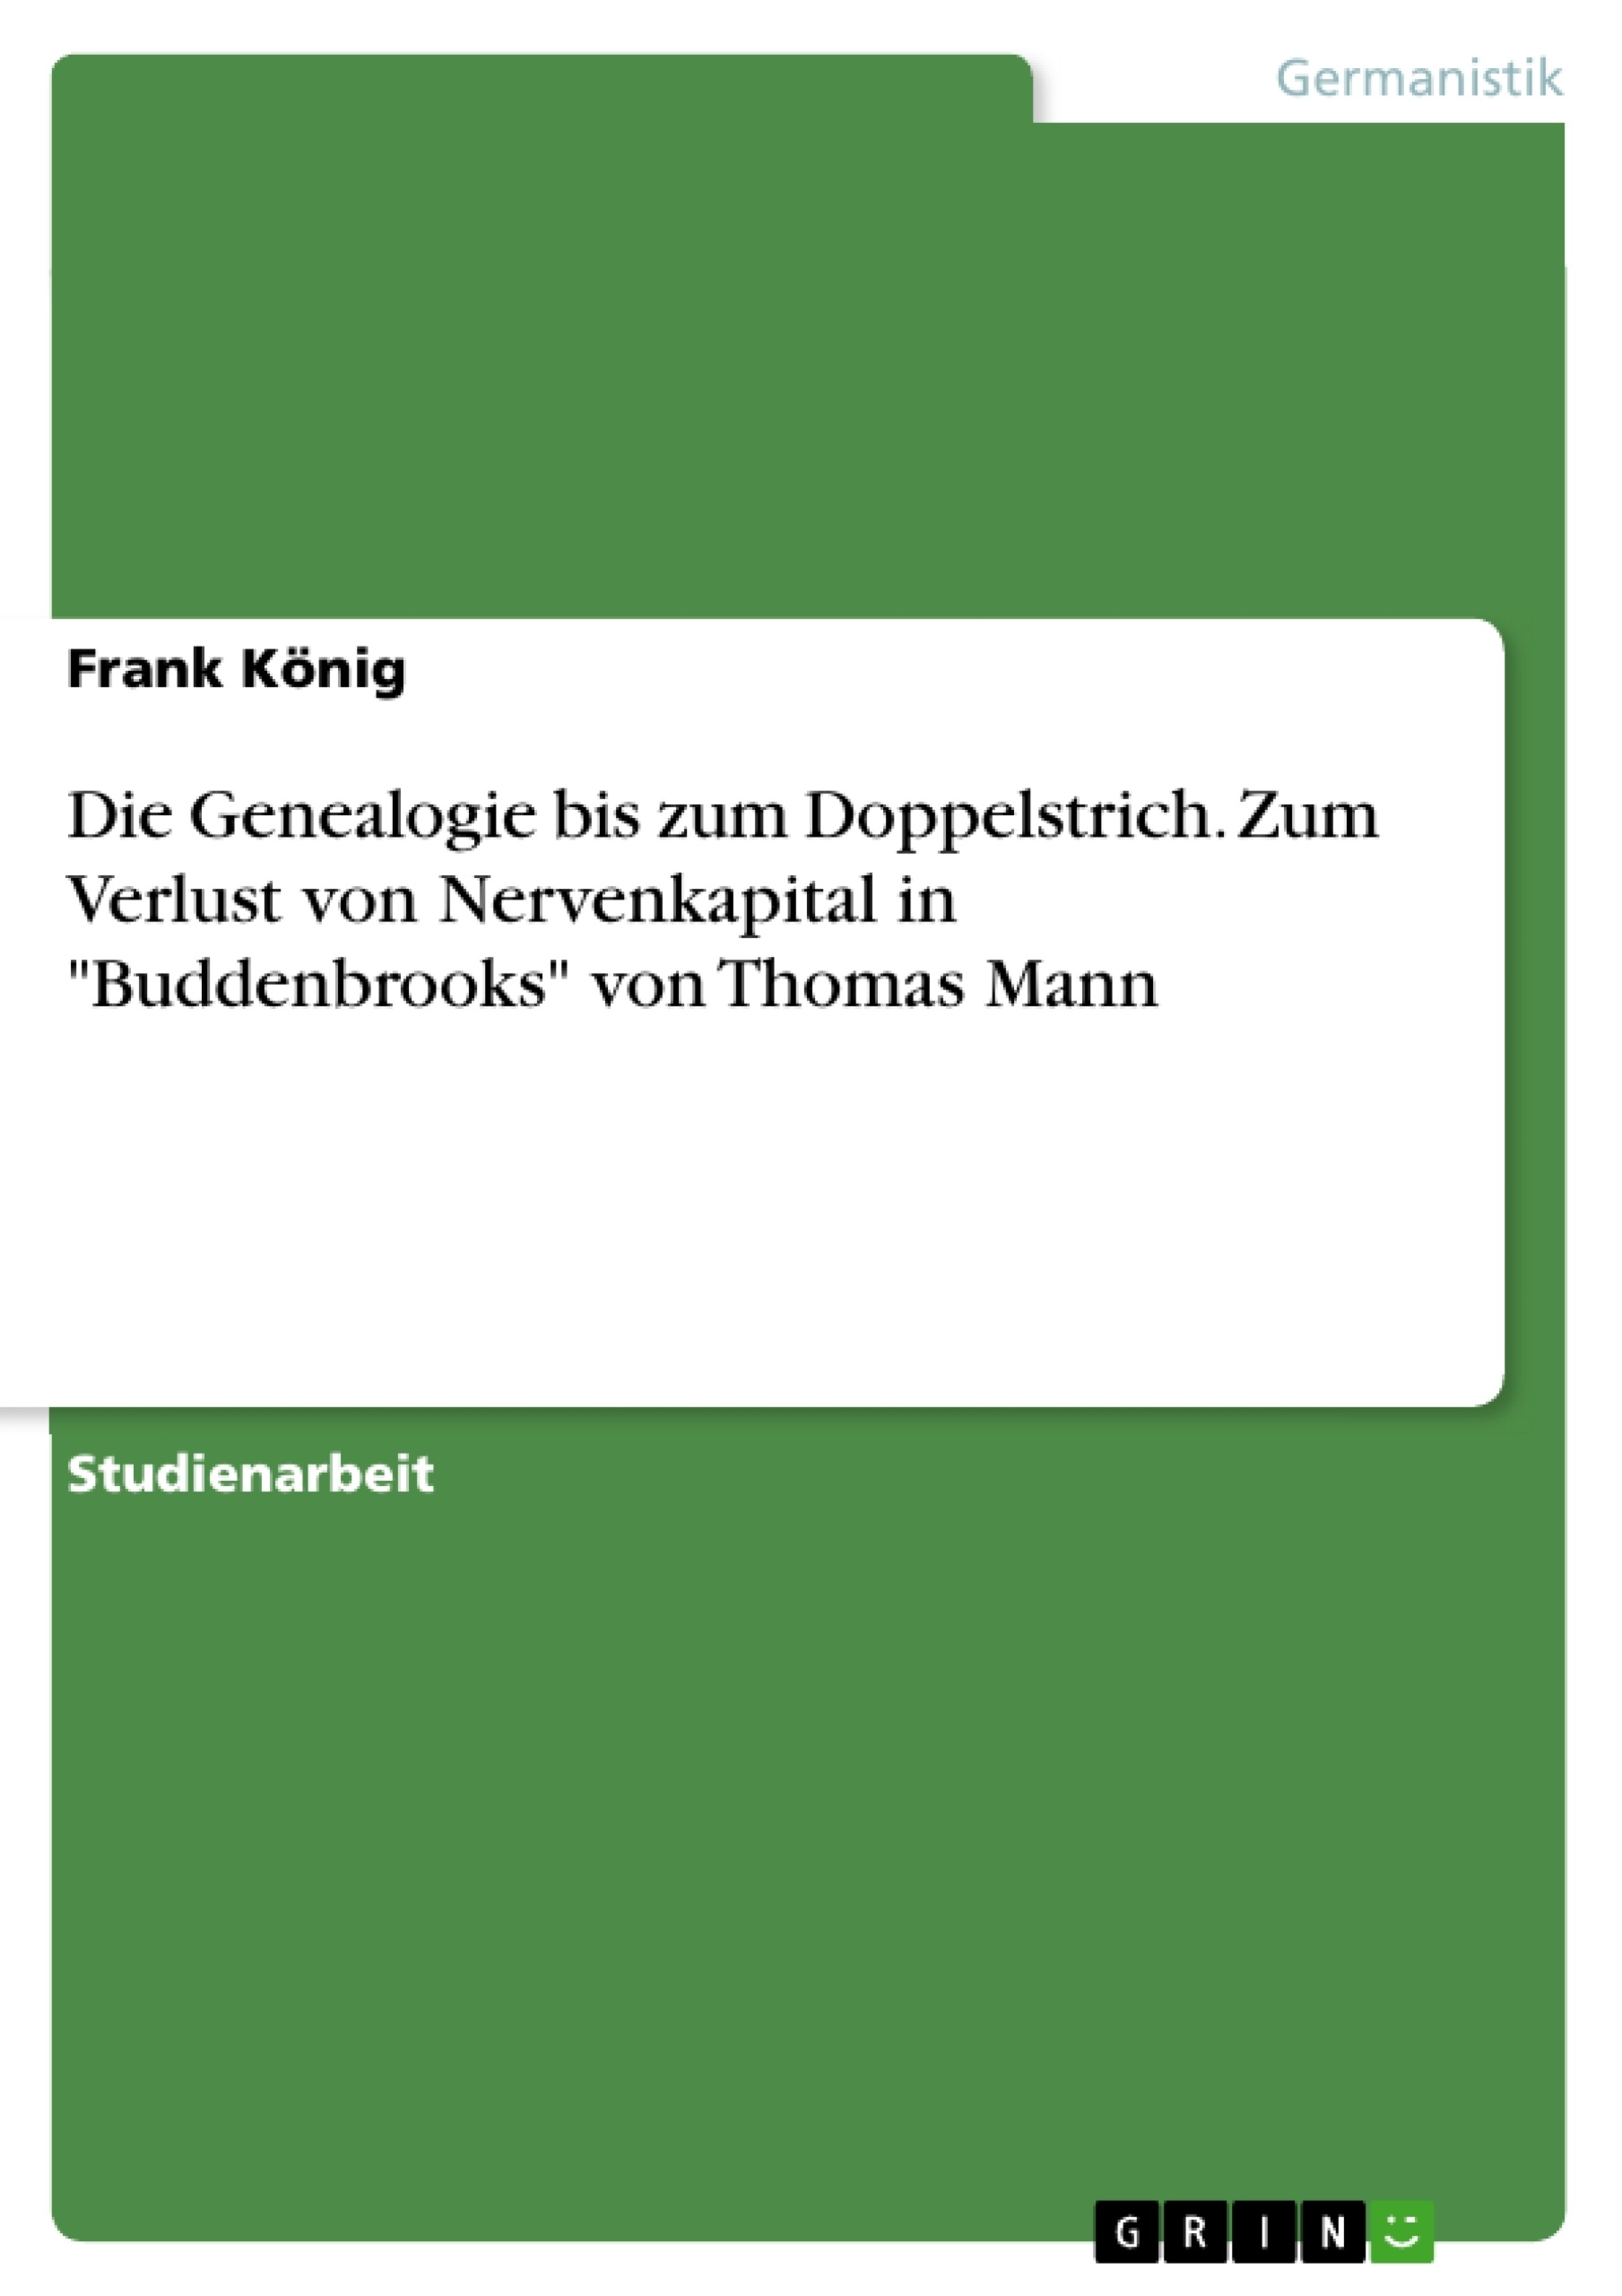 Título: Die Genealogie bis zum Doppelstrich. Zum Verlust von Nervenkapital in "Buddenbrooks" von Thomas Mann